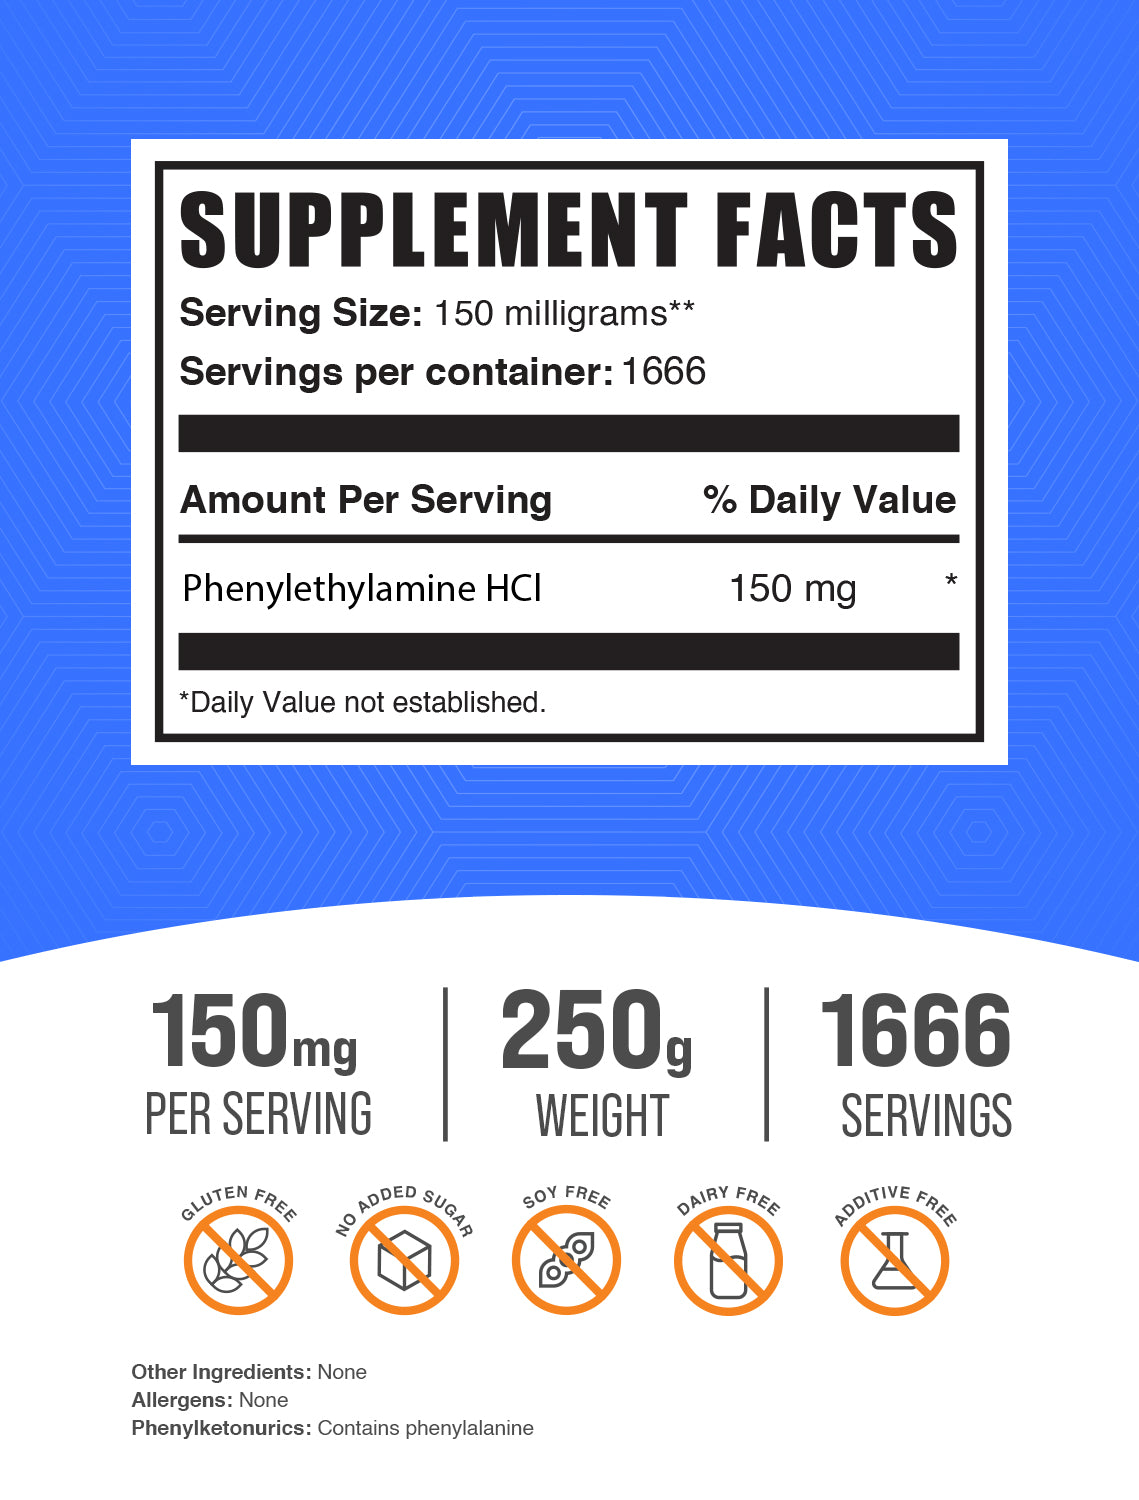 Phenylethylamine HCl (PEA) Powder label 100g